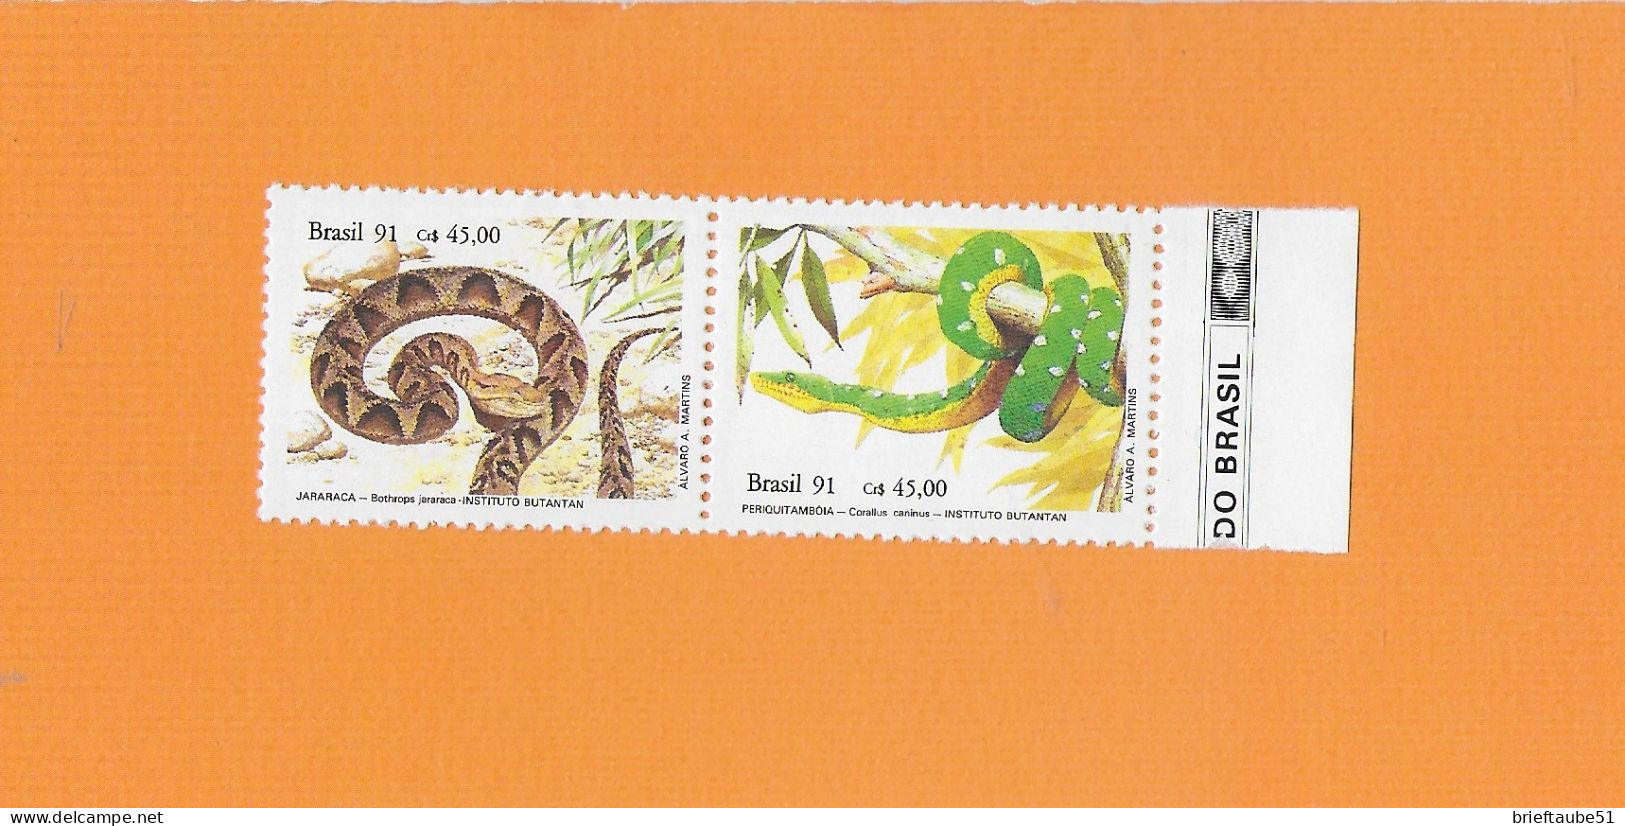 BRASILIEN BRASIL 1991  Postfrisch**MNH  MICHEL-Nr. 1415-1416  = REPTILIEN  # SCHLANGEN  # Naturschutz: Reptilien - Serpents